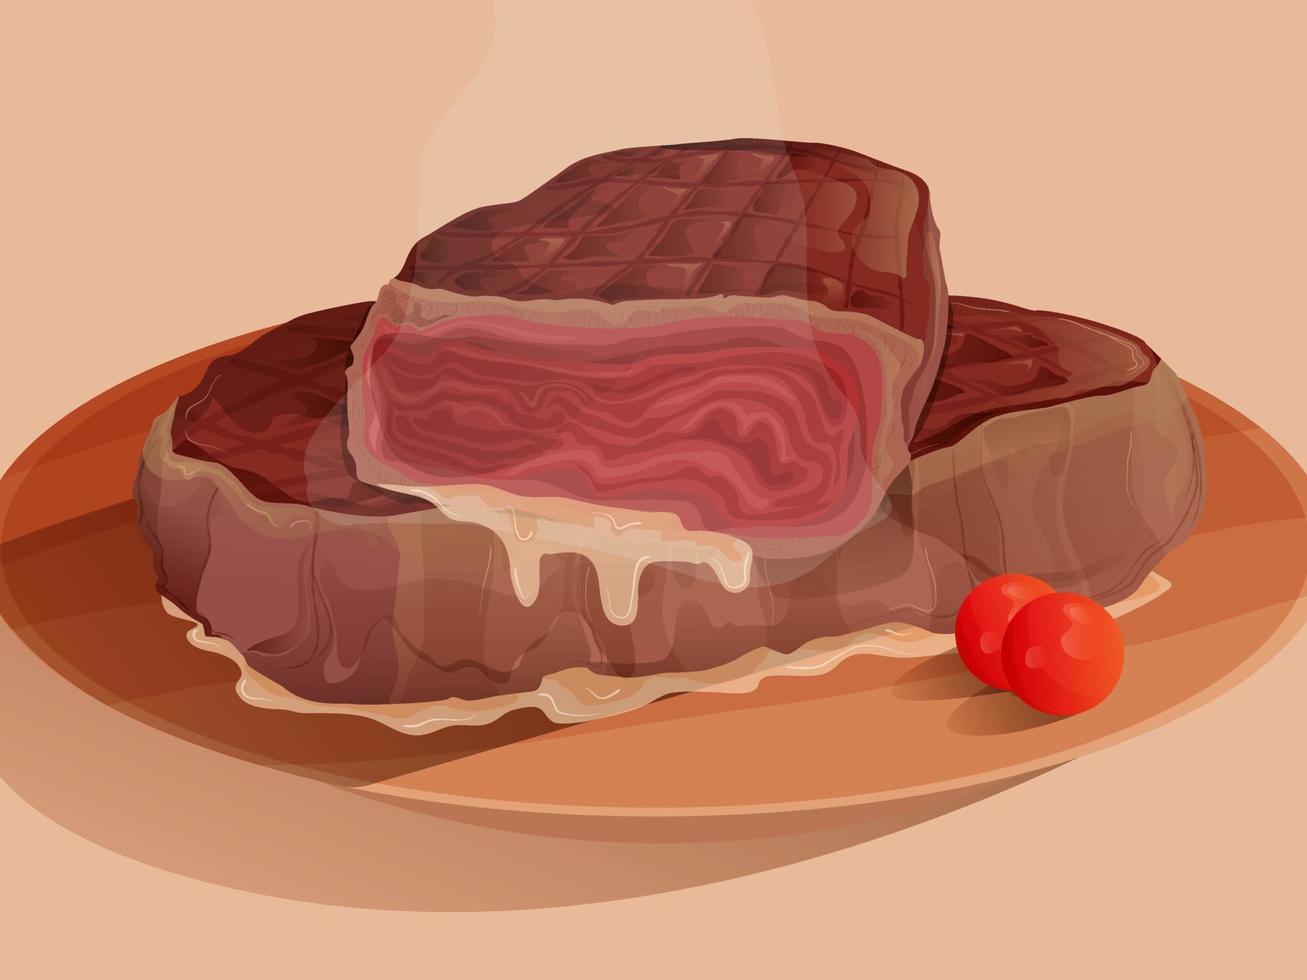 juicy steak in vector art